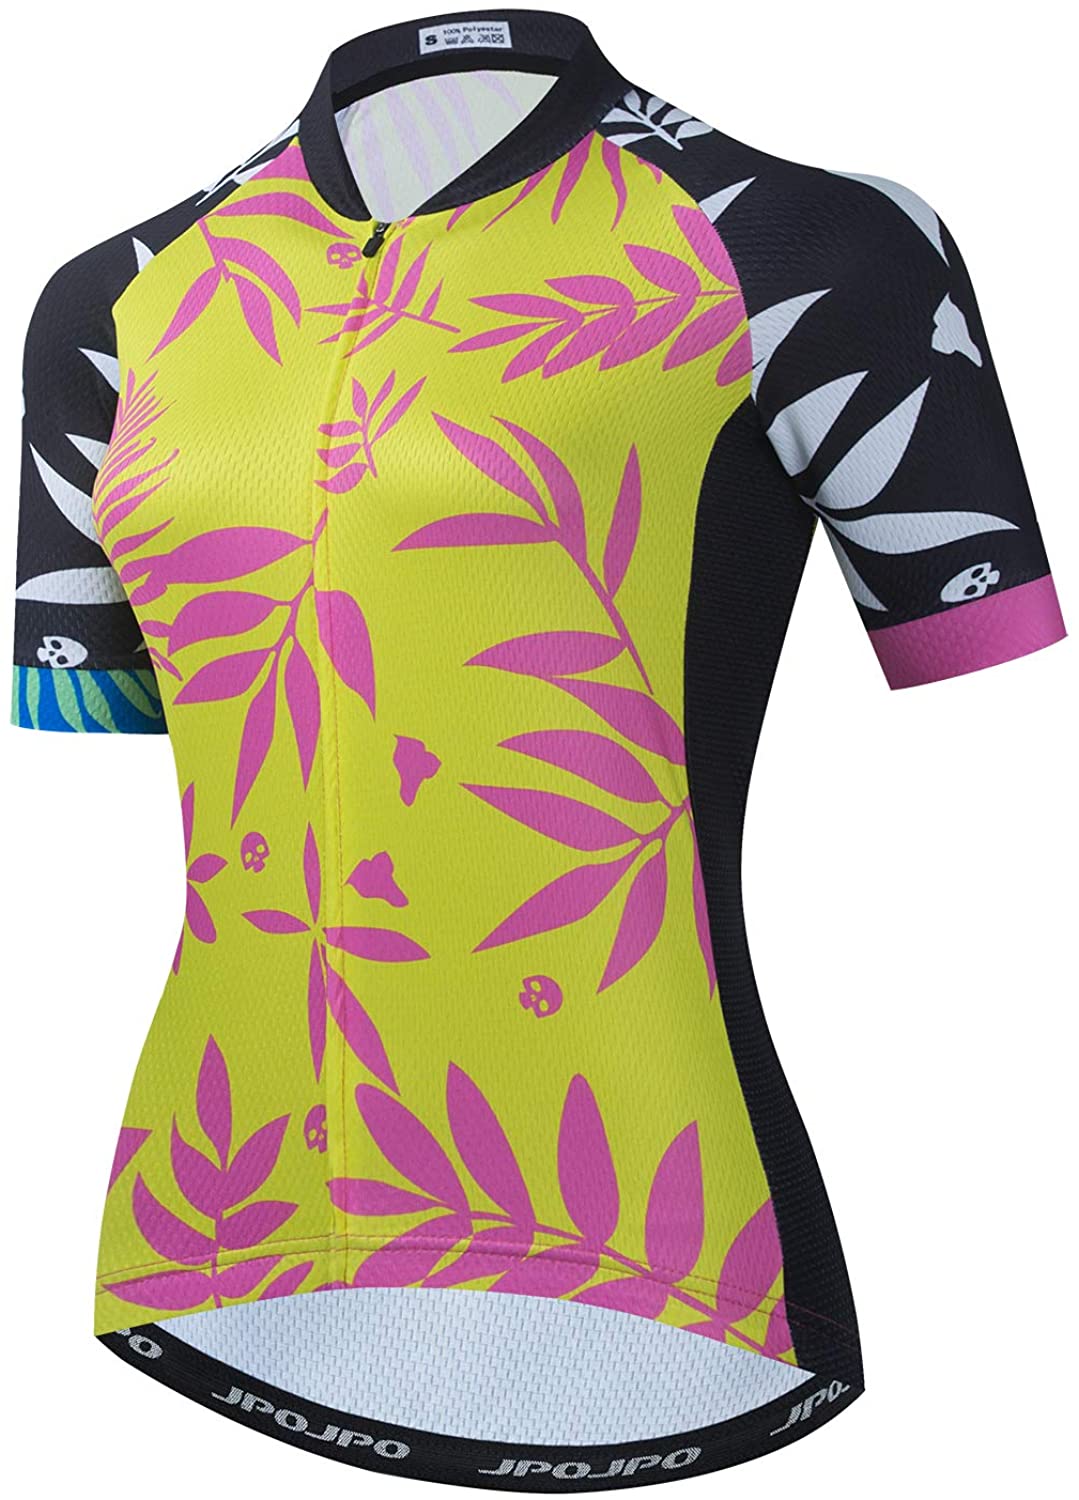 Women's Cycling Jersey Clothing Bicycle Sportswear Short Sleeve Bike Shirt  F11 